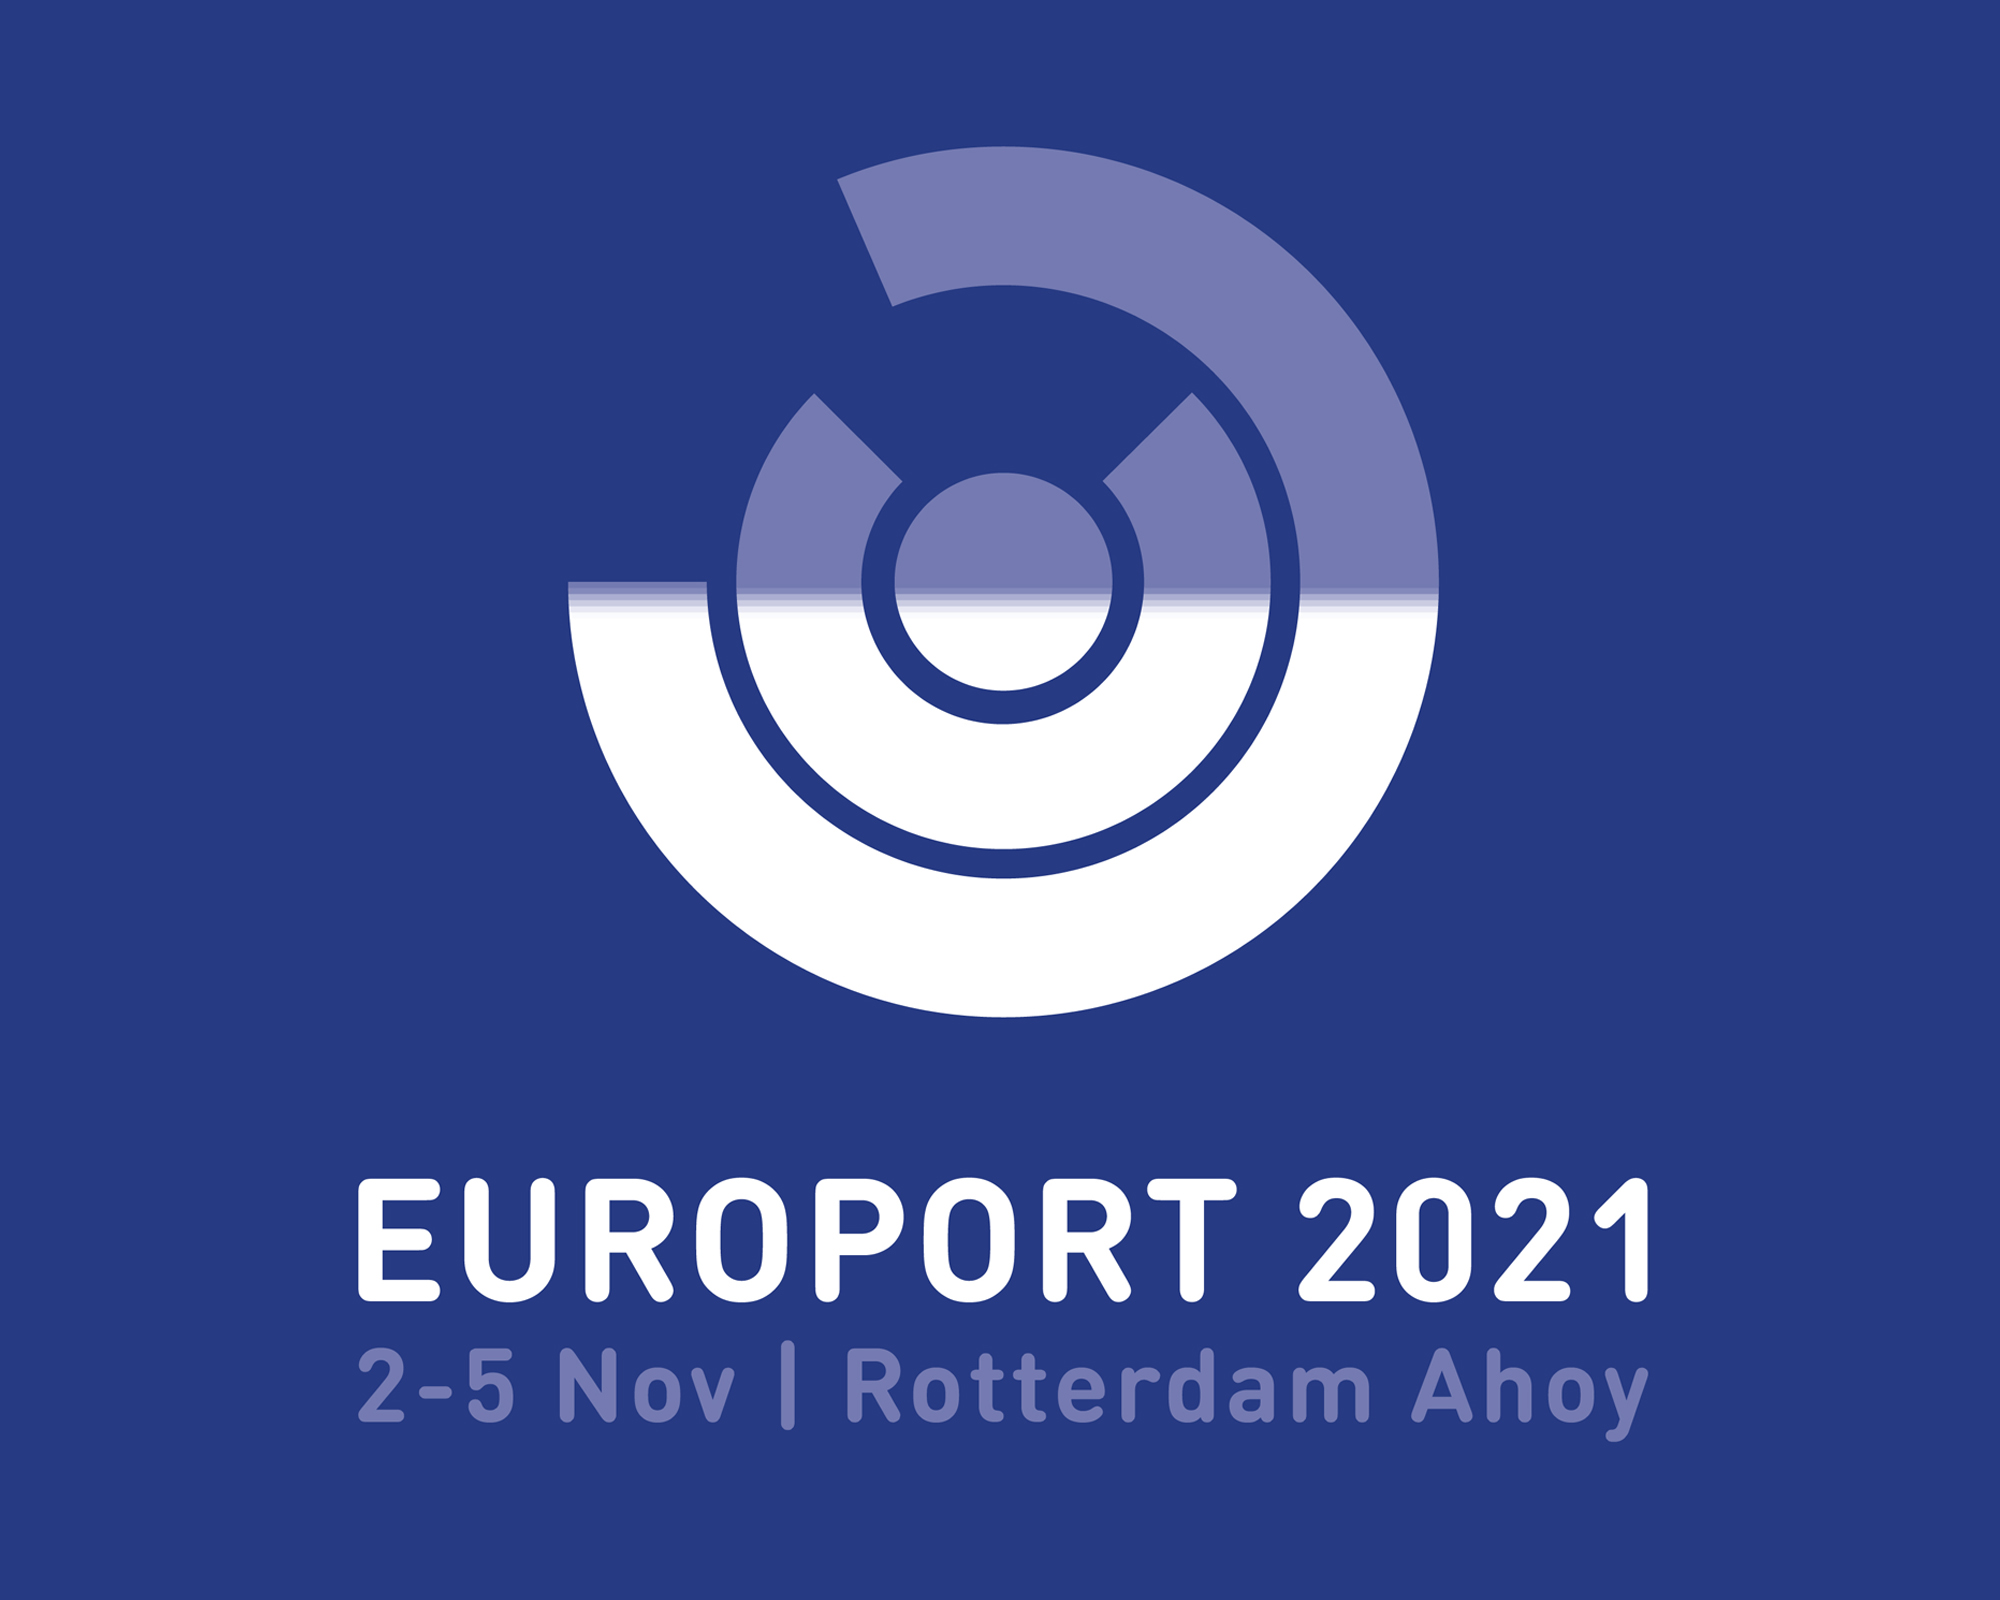 XUBI GROUP ESTARÁ EXPONIENDO EN ROTTERDAM EN LA FERIA EUROPORT 2021